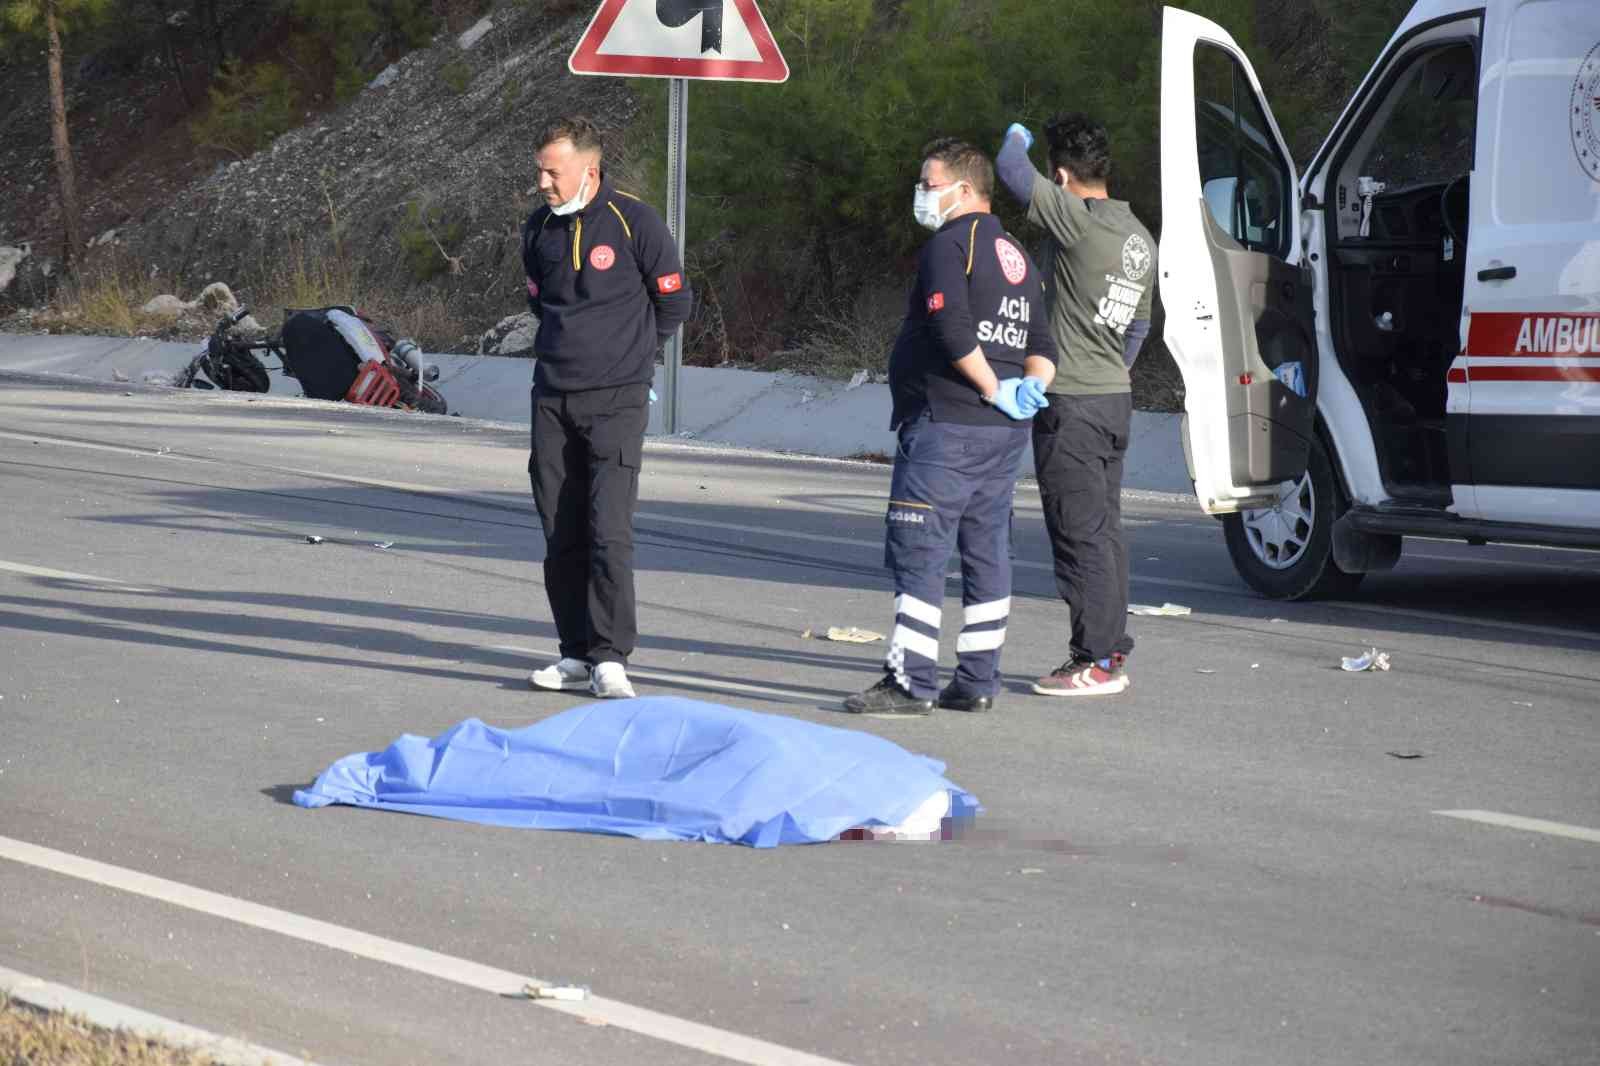 Burdur’da hurda arabası takılı motosiklet otomobille çarpıştı: 1 ölü #burdur